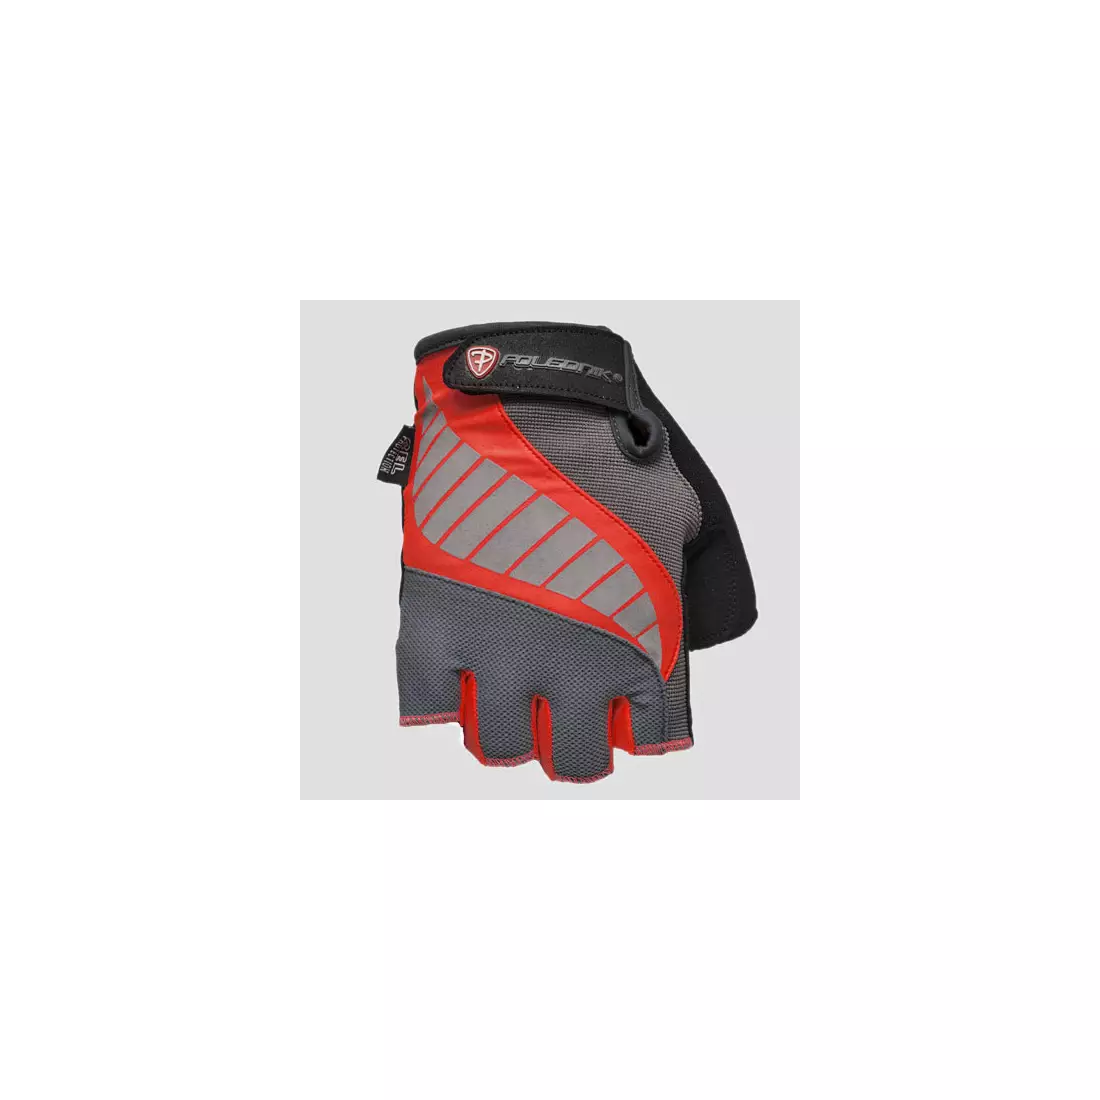 POLEDNIK GELMAX NEW15 gloves, color: Red